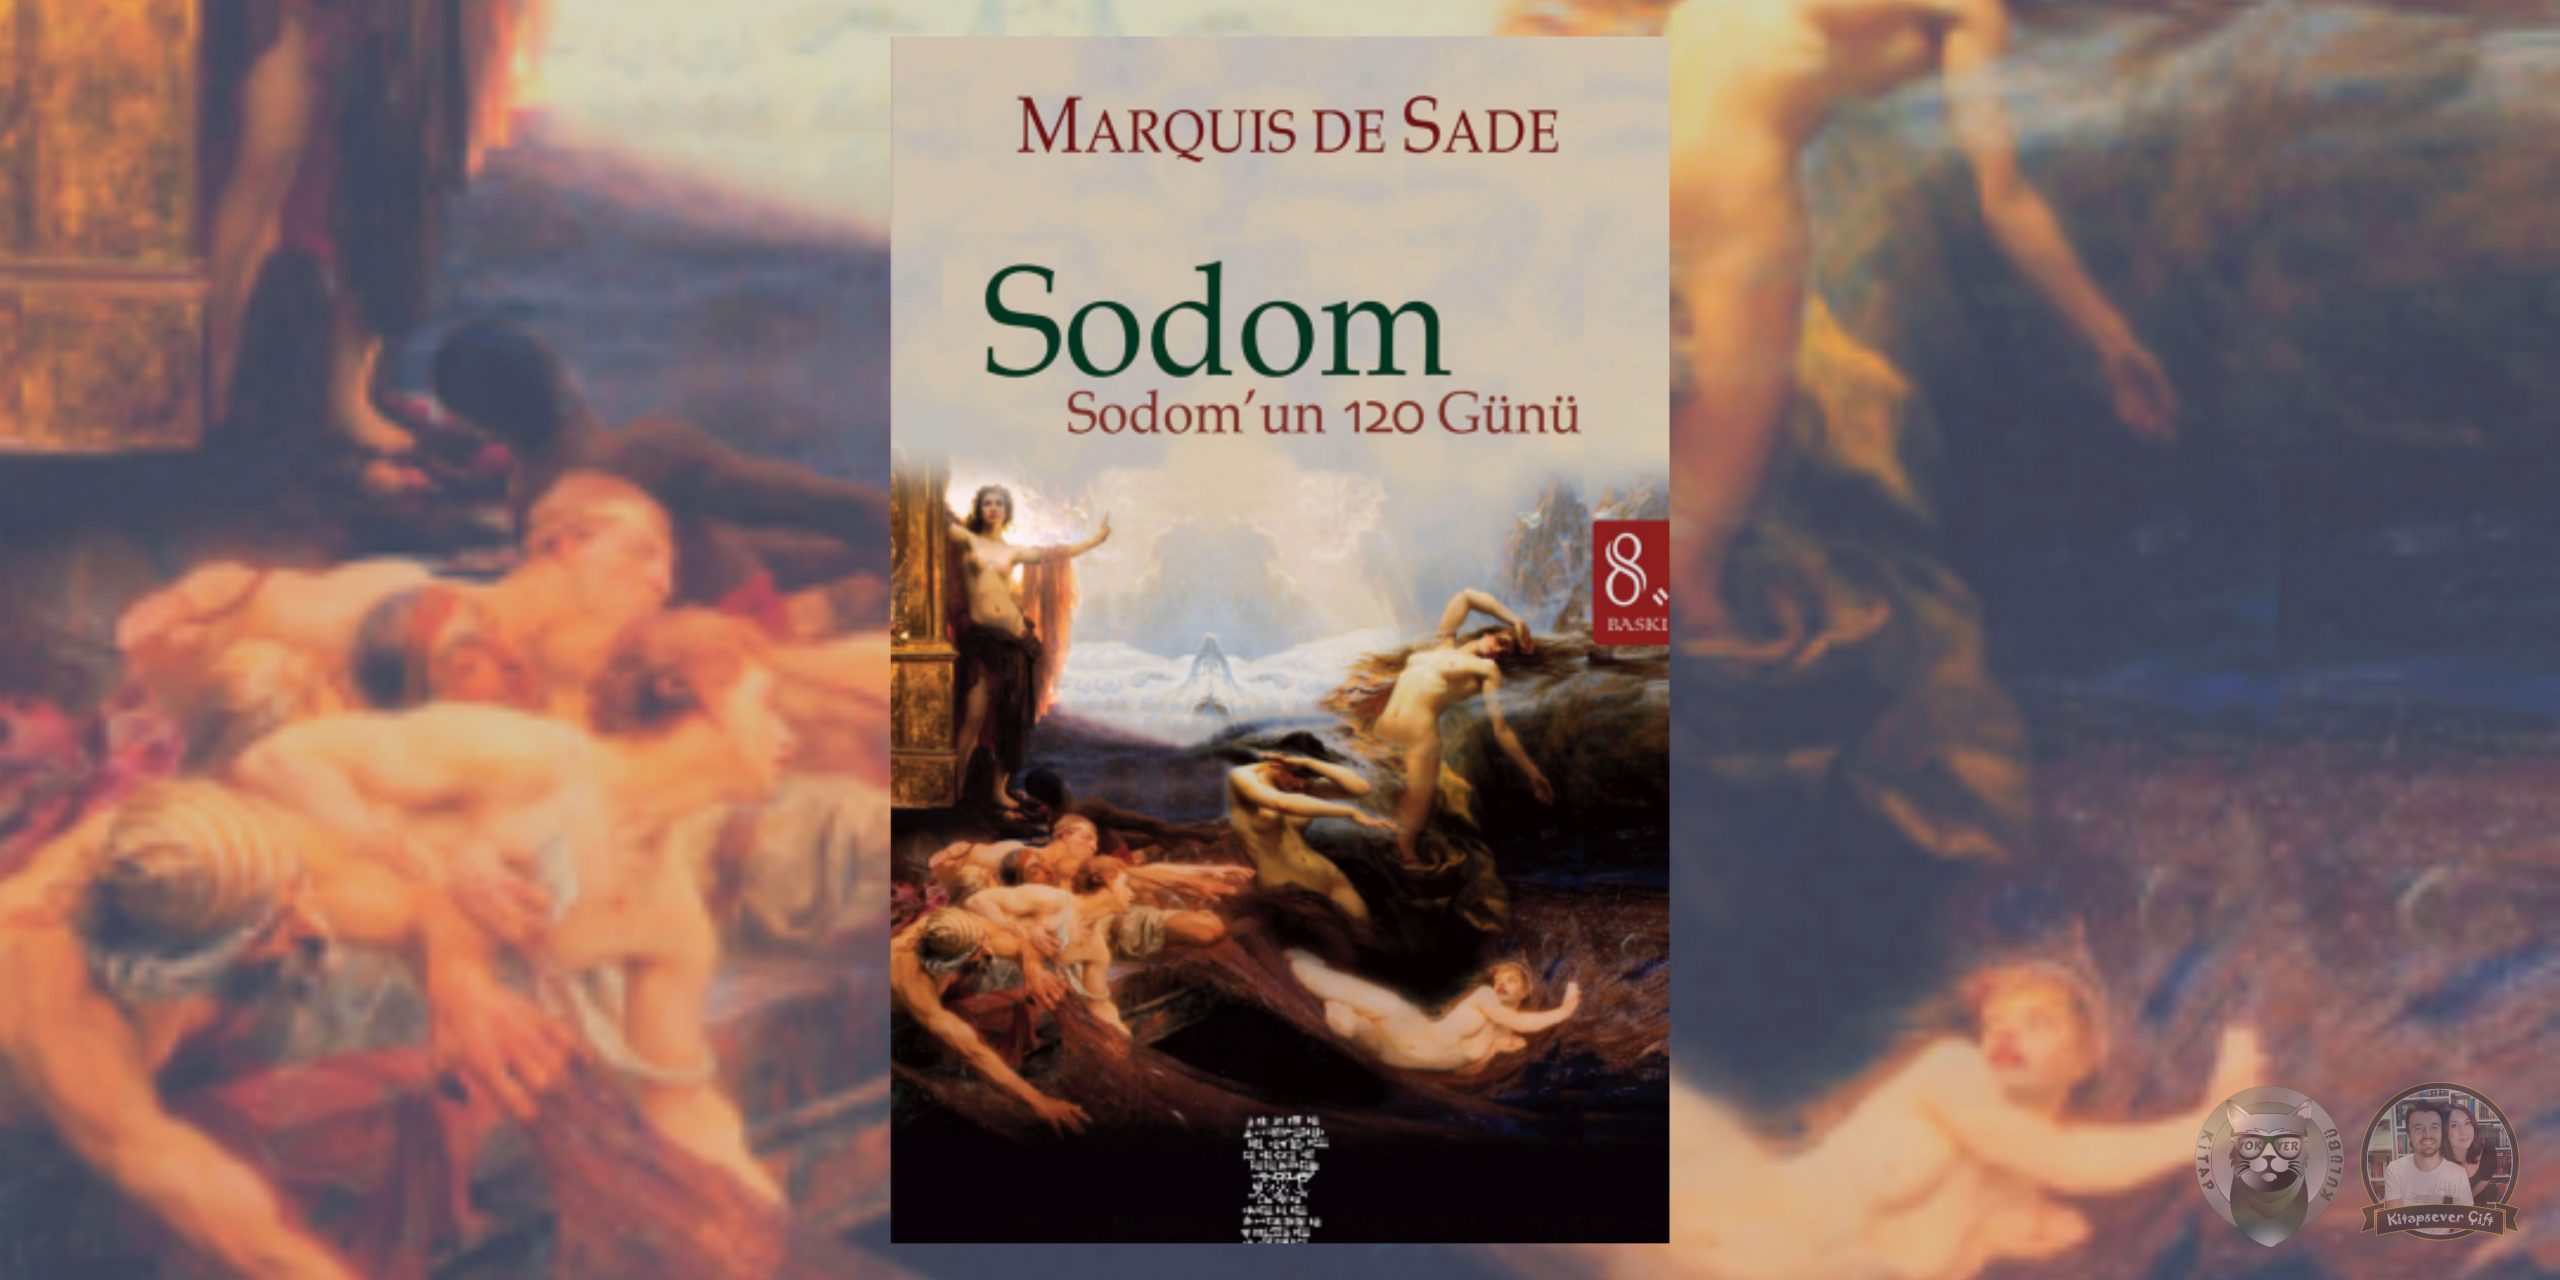 körlük hayranlarına 13 kitap önerisi 10 – sodom – sodomun 120 gunu scaled